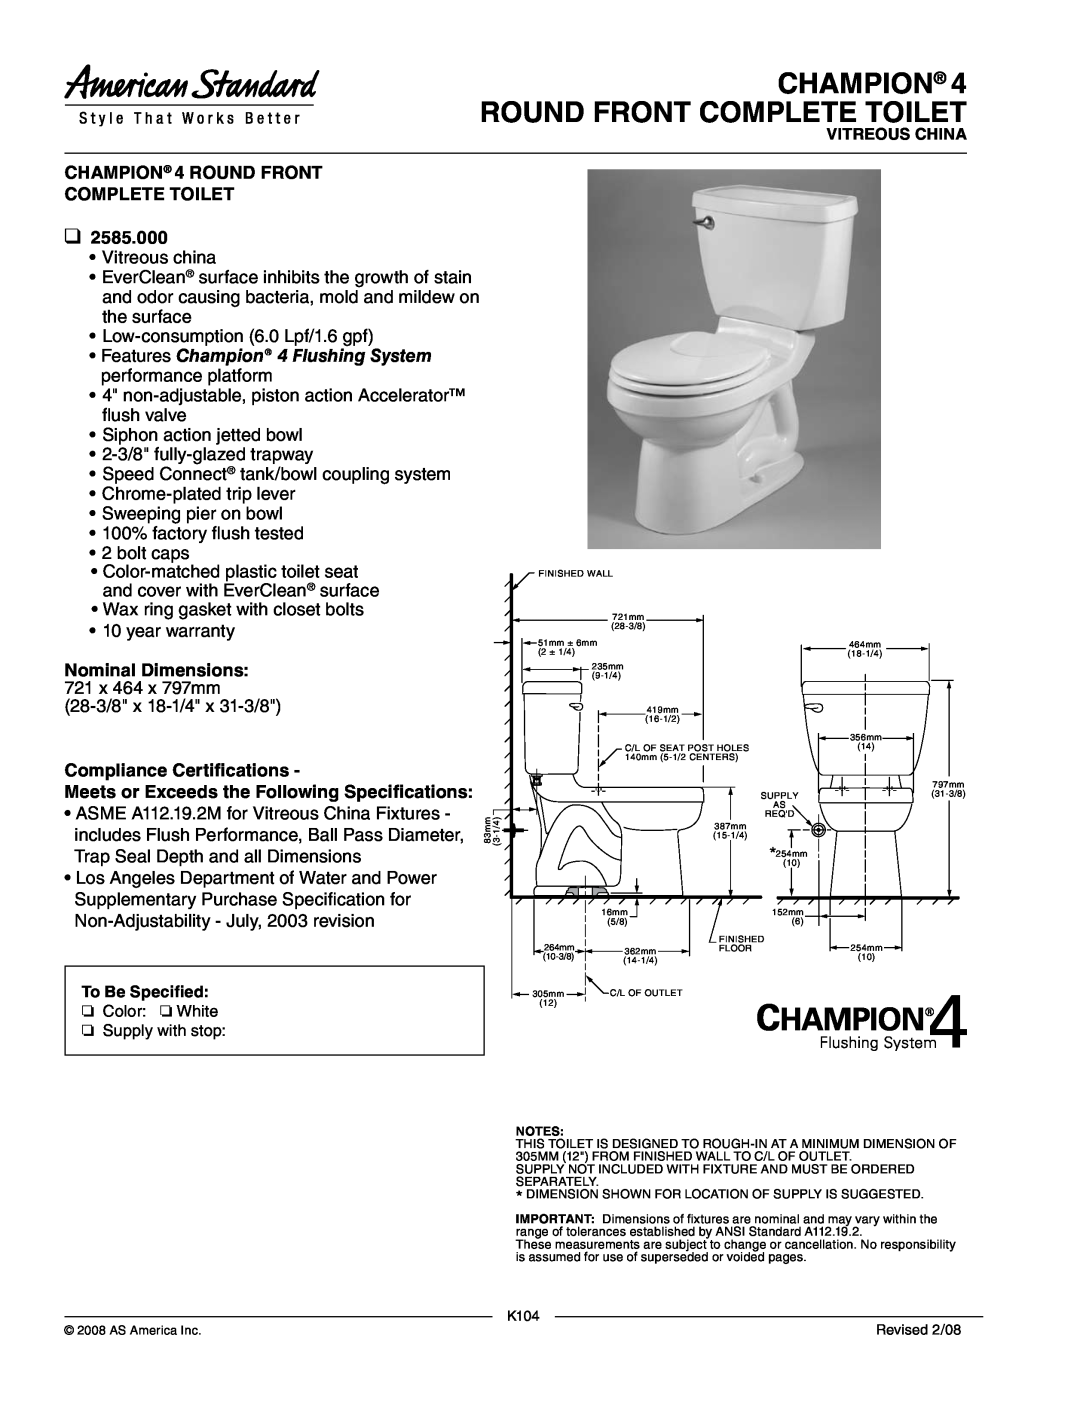 American Standard 2585.000 warranty Champion Round Front Complete Toilet, CHAMPION 4 ROUND FRONT COMPLETE TOILET 